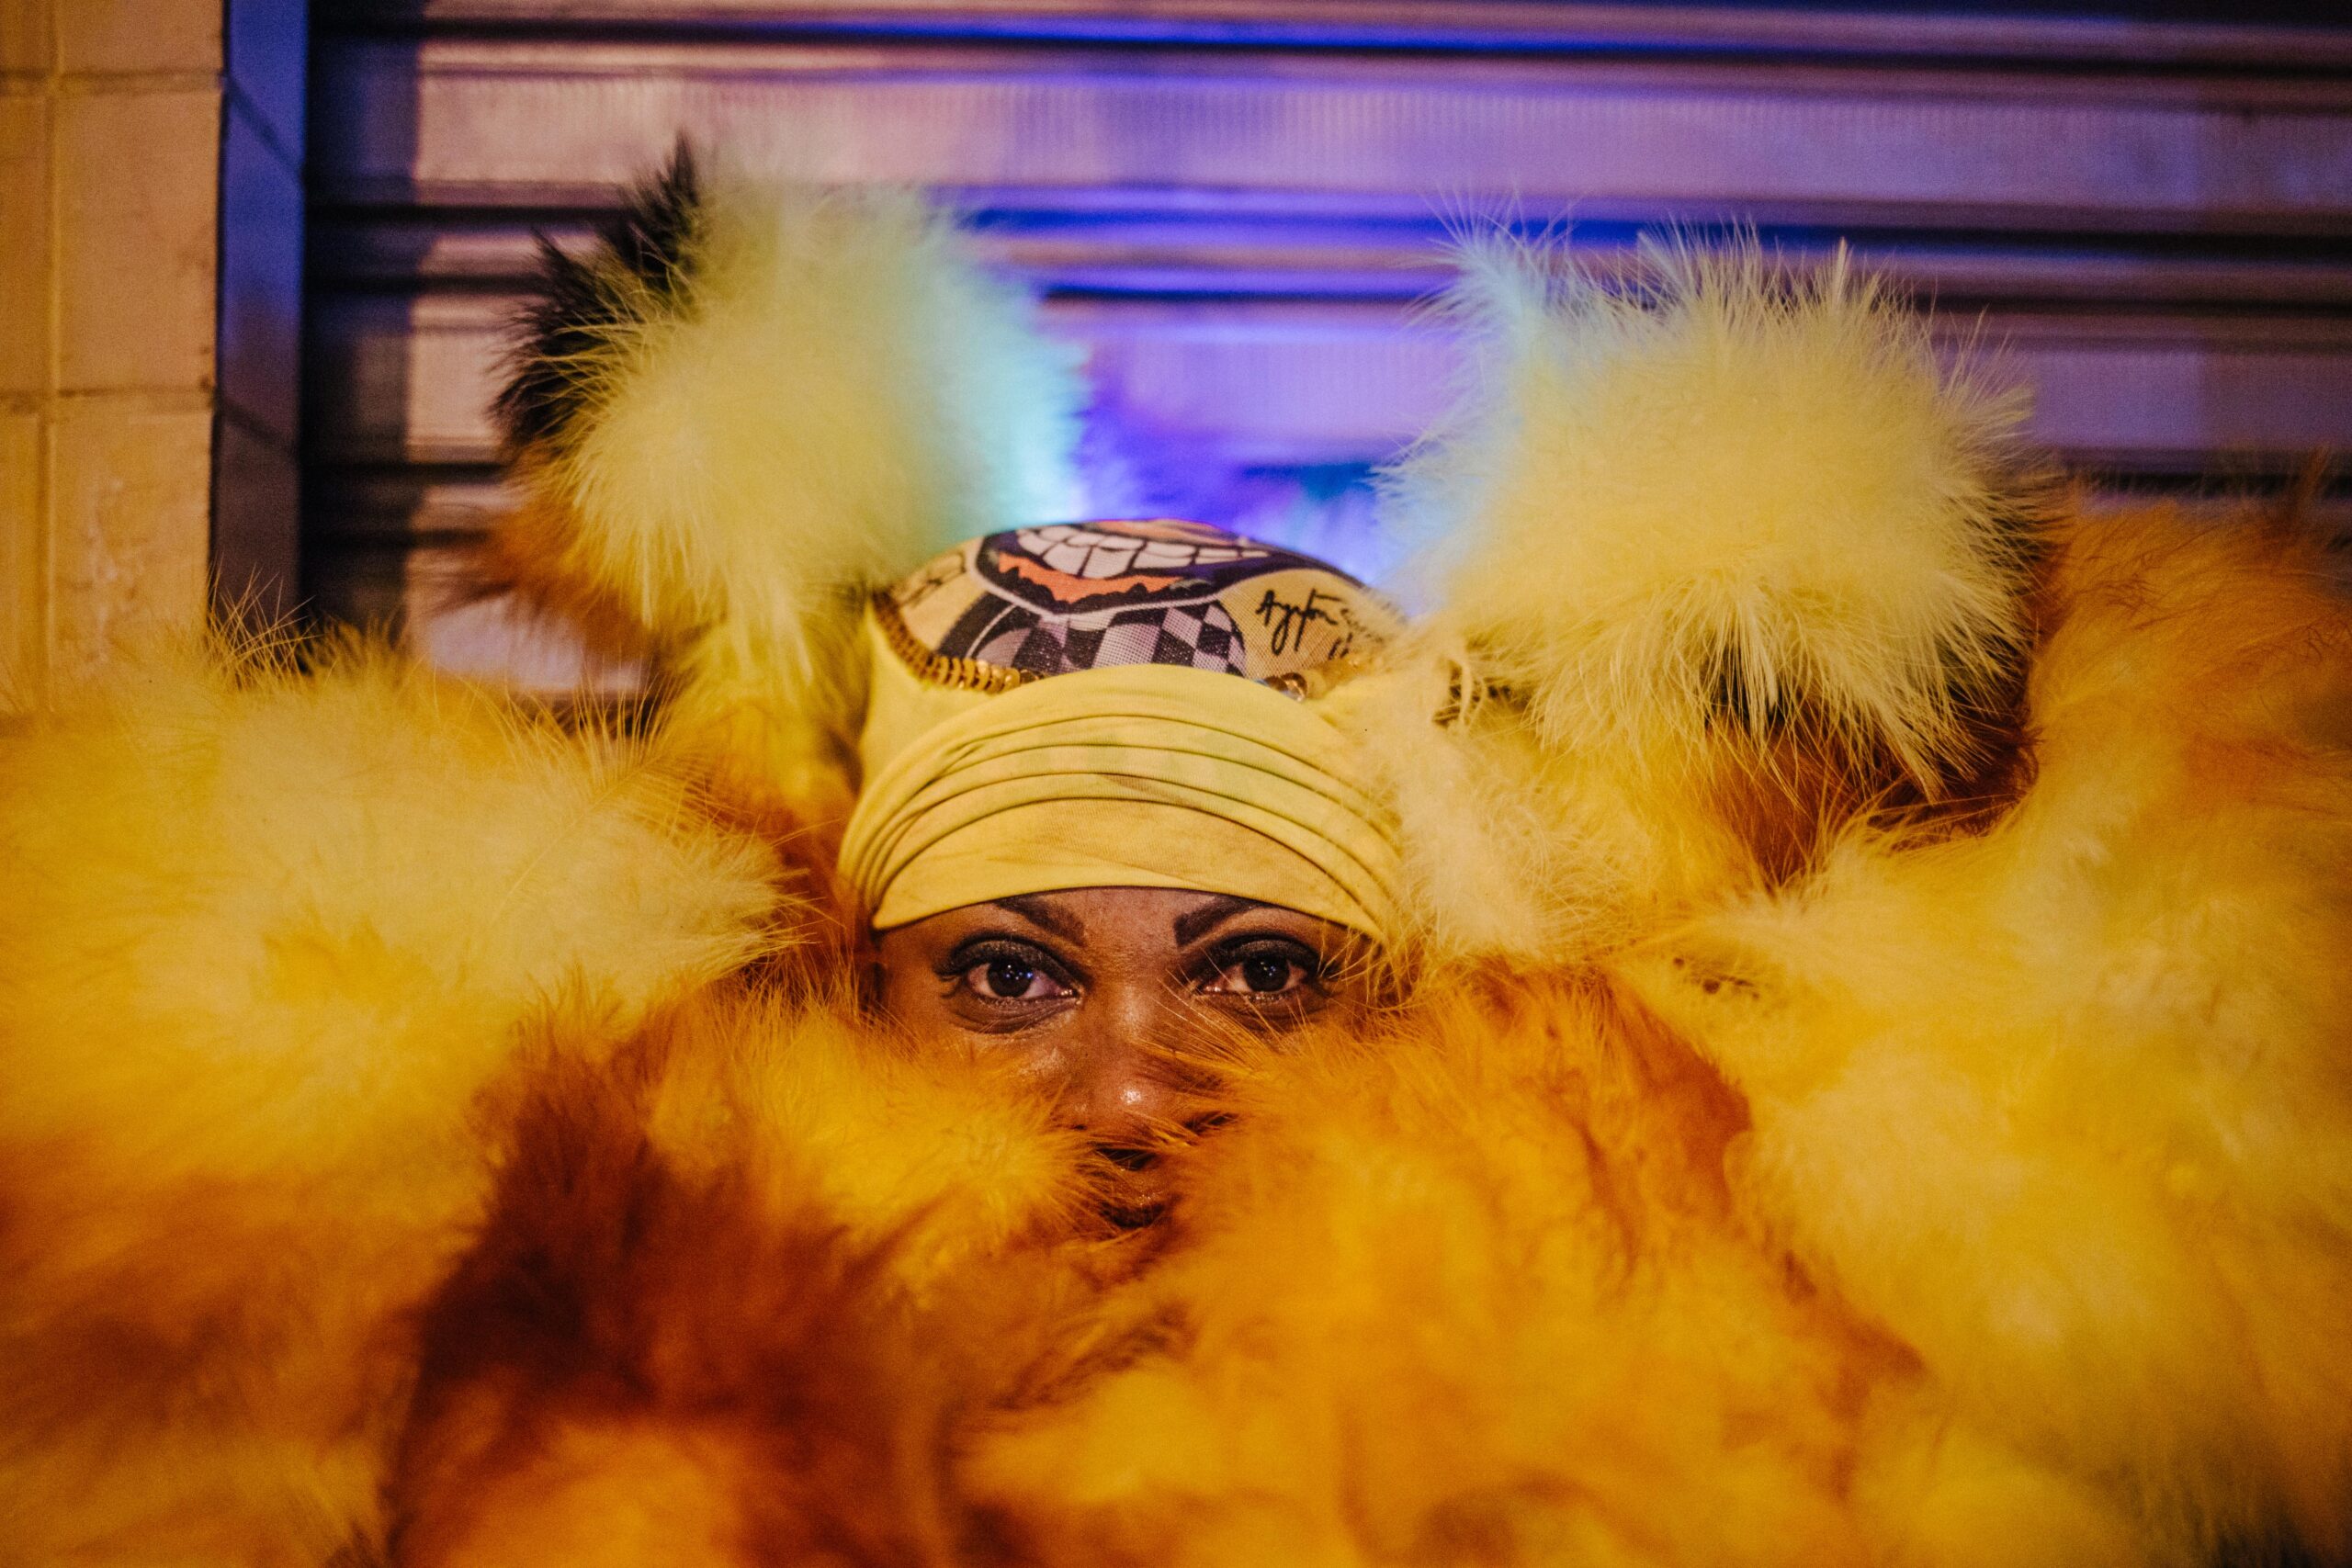 Bate Bolas, tradição cultural dos subúrbios do Rio de Janeiro, são um espetáculo no carnaval carioca - Rio de Janeiro - 2020 para Folha de SP l Foto: Tuane Fernandes/Escola de Ativismo/Todos direitos reservados